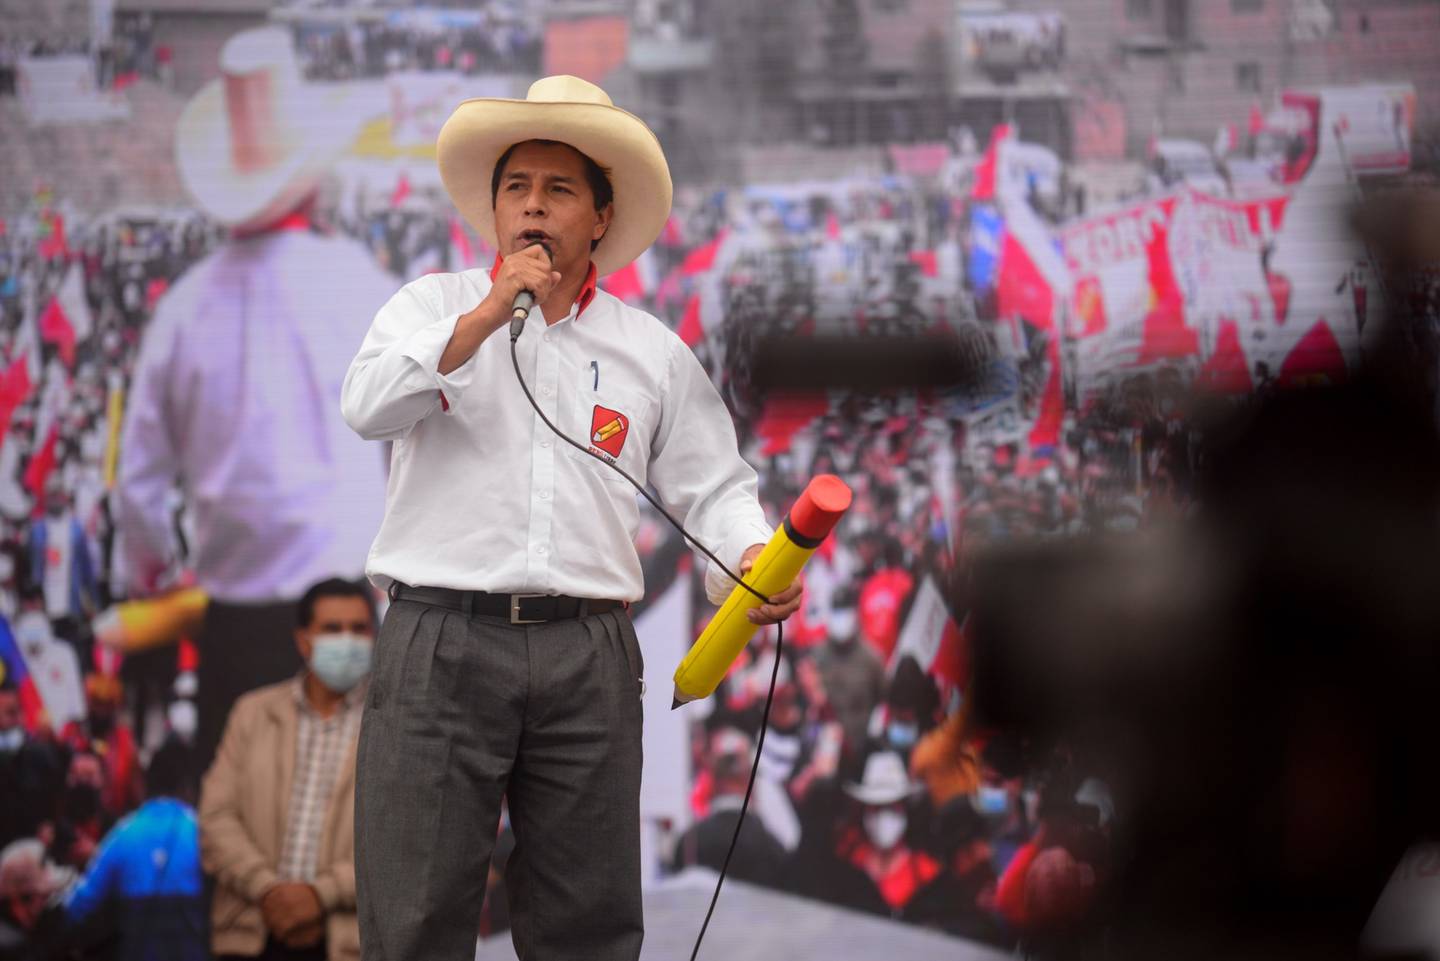 El mandatario peruano disolvió el Congreso de su país el 7 de diciembre de 2022, intentando un autogolpe de Estado, por el cual fue destituido y reemplazado por Dina Boluarte.dfd